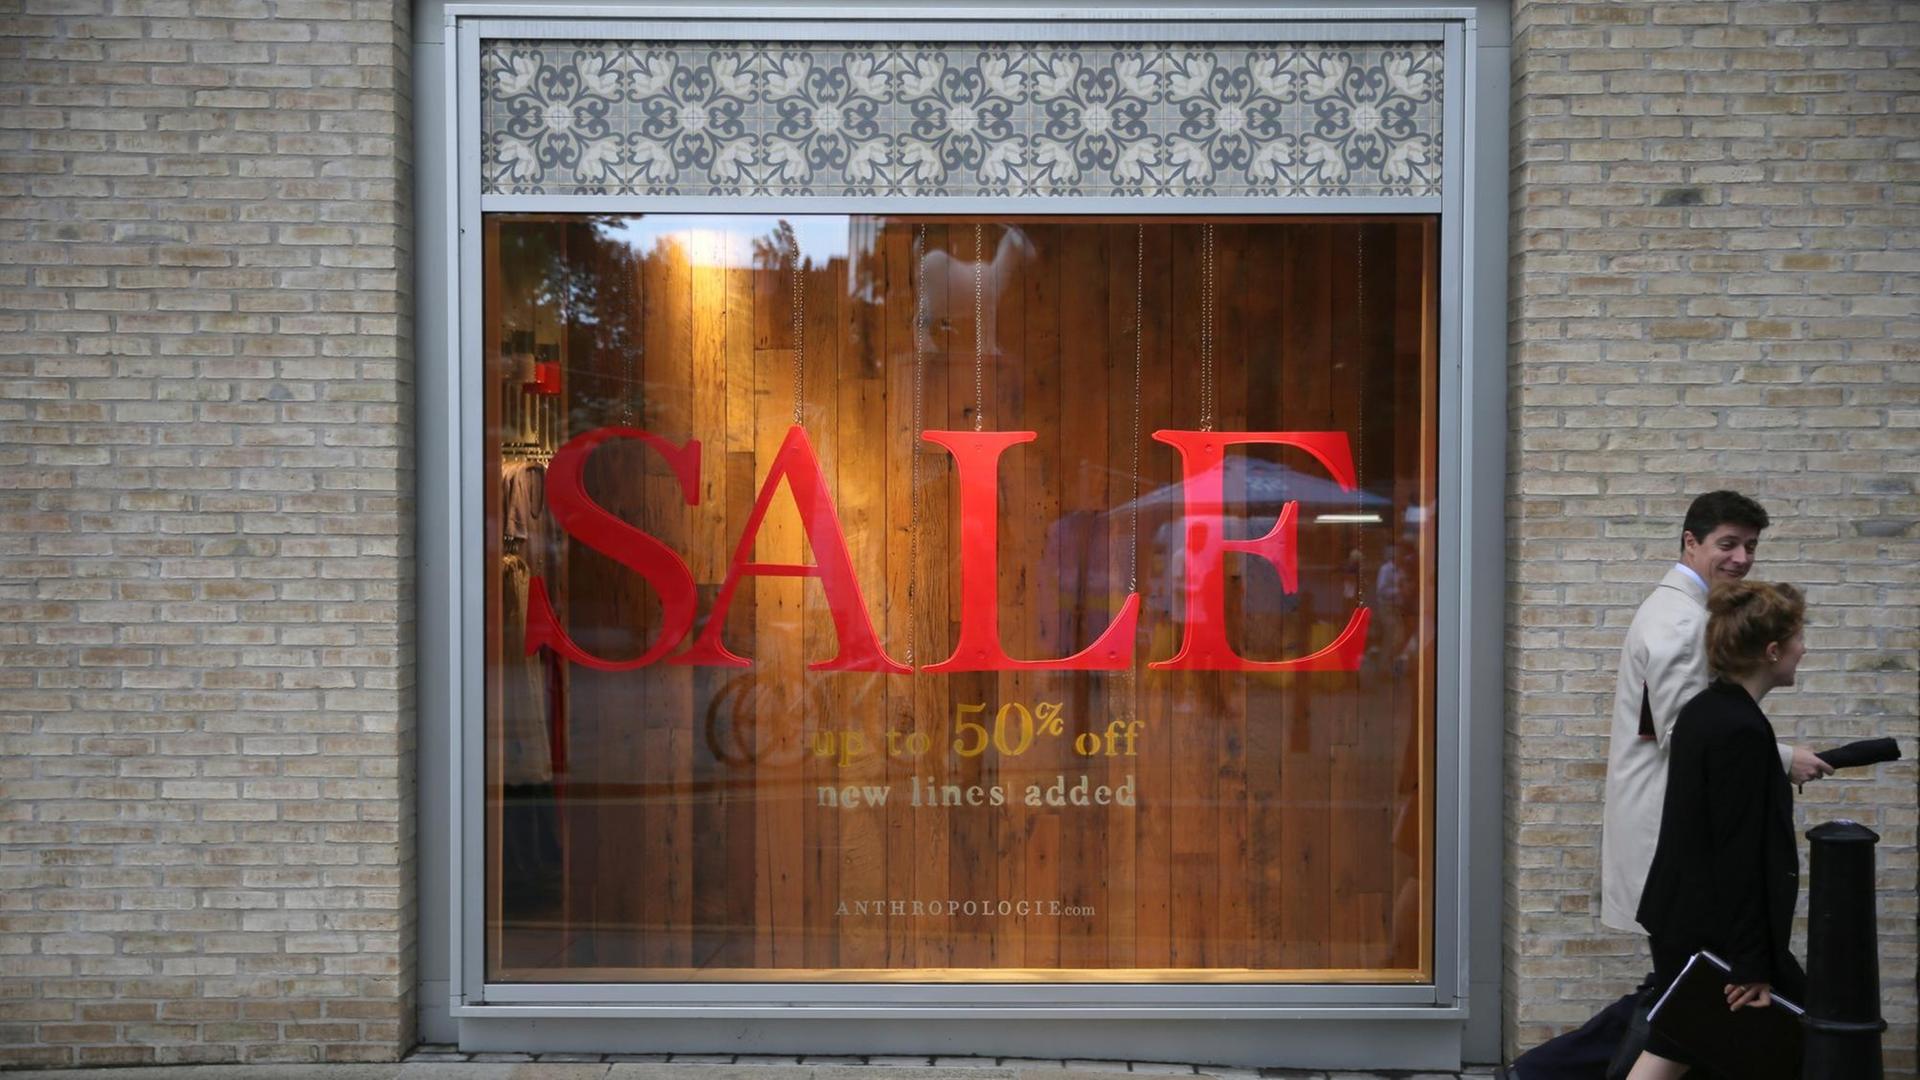 Ein Schaufenster in einer Fußgängerzone in England. Das Schaufenster ist leer und trägt den großen, roten Schritzug: "SALE". 